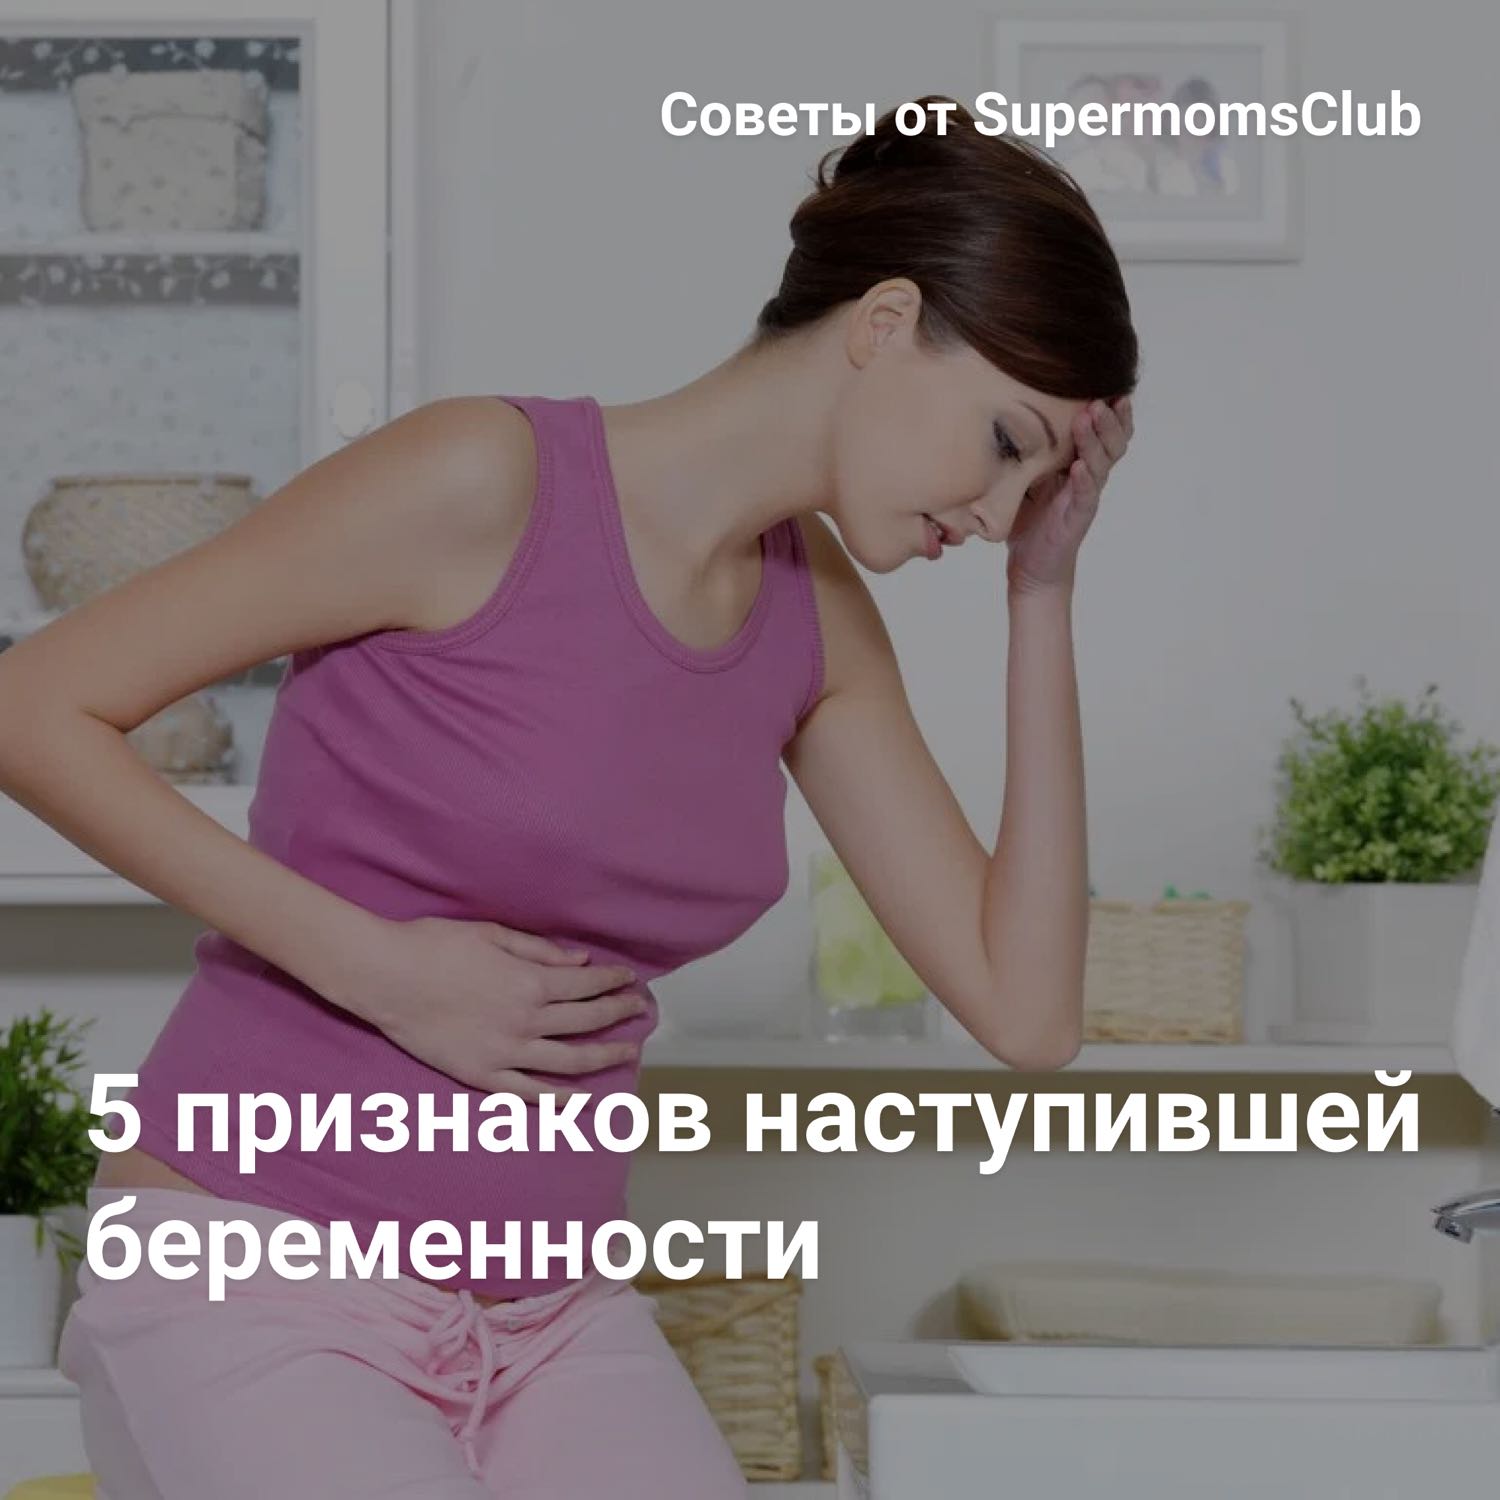 5 признаков наступившей беременности
Когда зародыш прикрепляется к сли... 